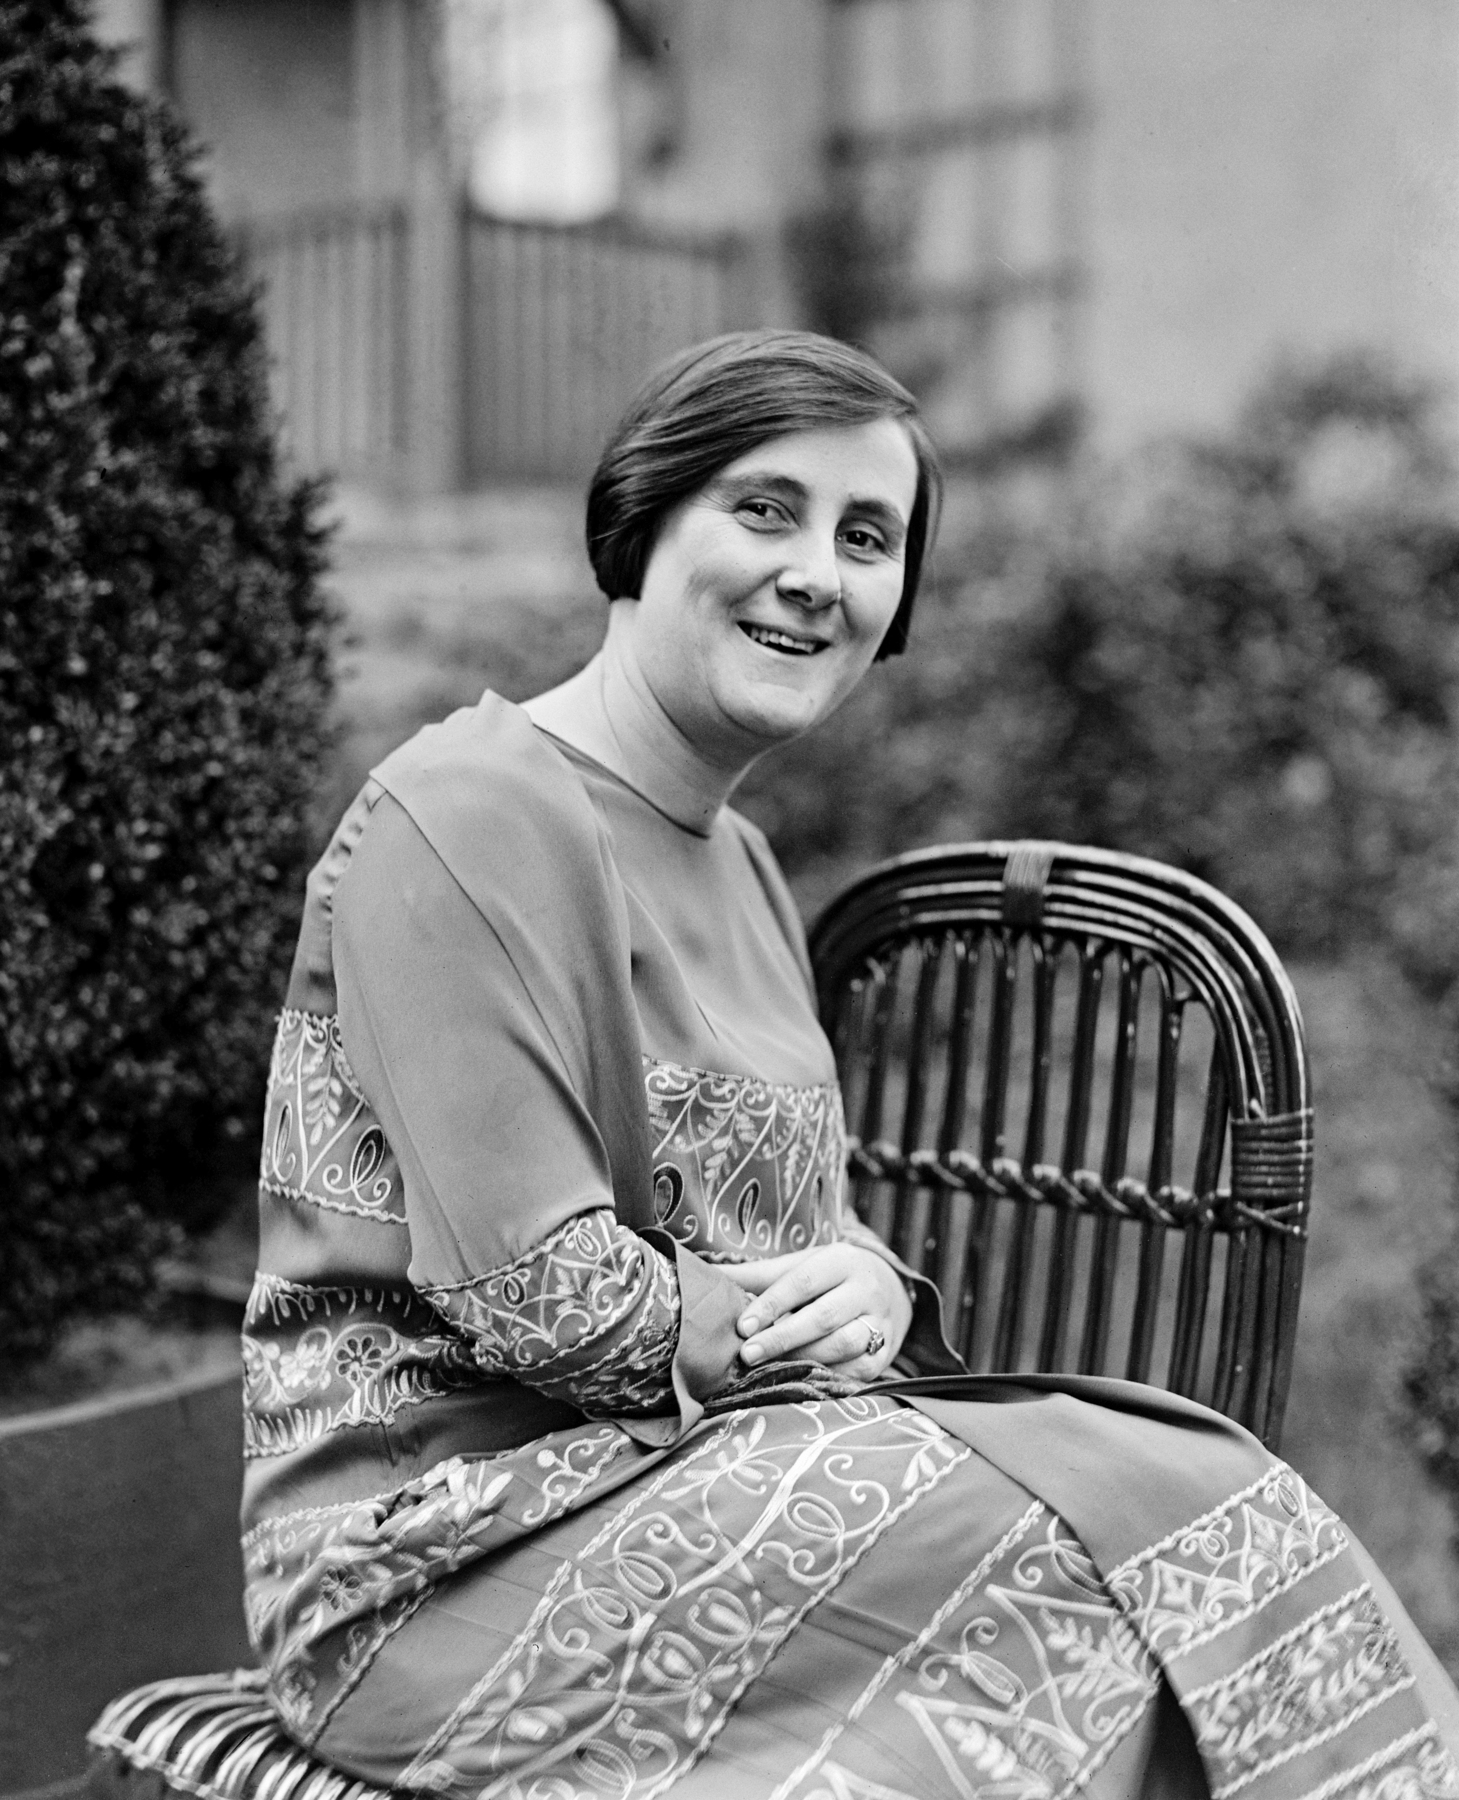 Fotografia em preto e branco. Uma mulher sorridente, de cabelos curtos e lisos, trajando um longo vestido, sentada de lado sobre uma cadeira.